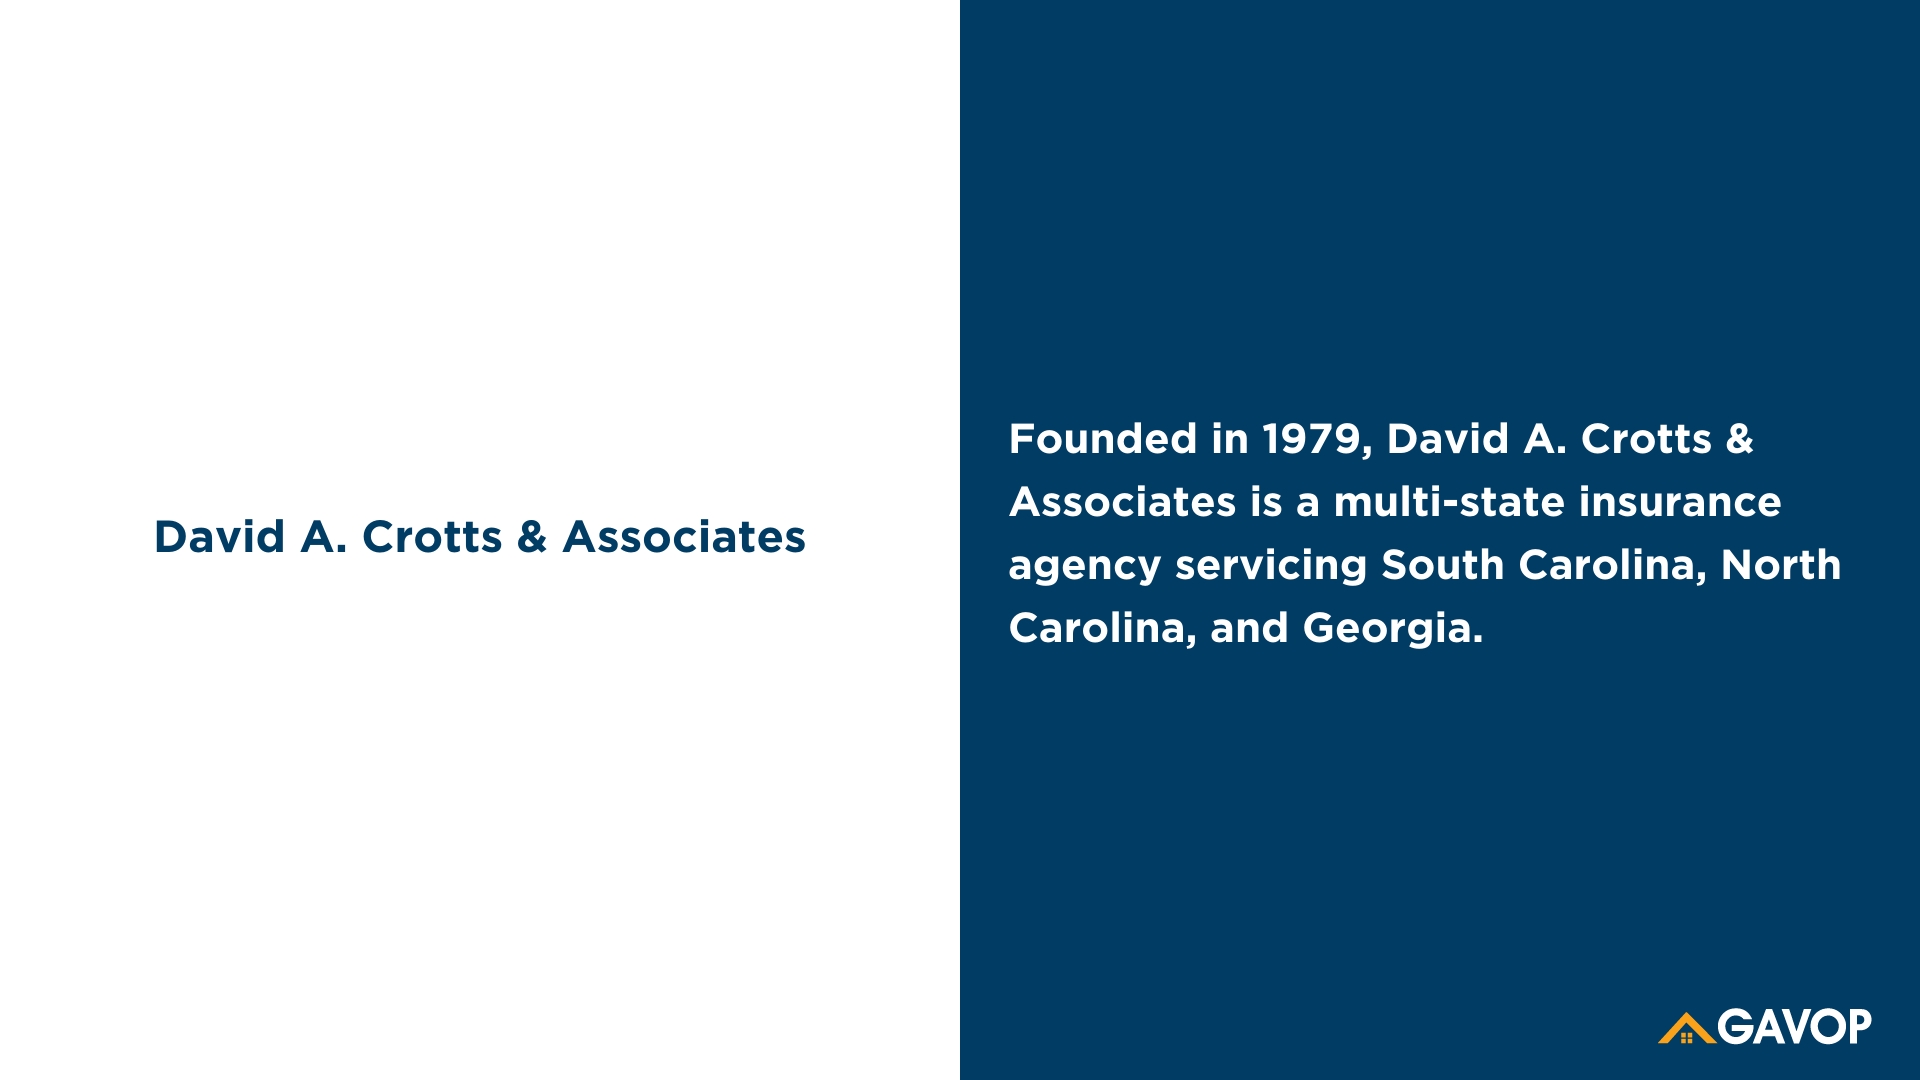 David A. Crotts & Associates